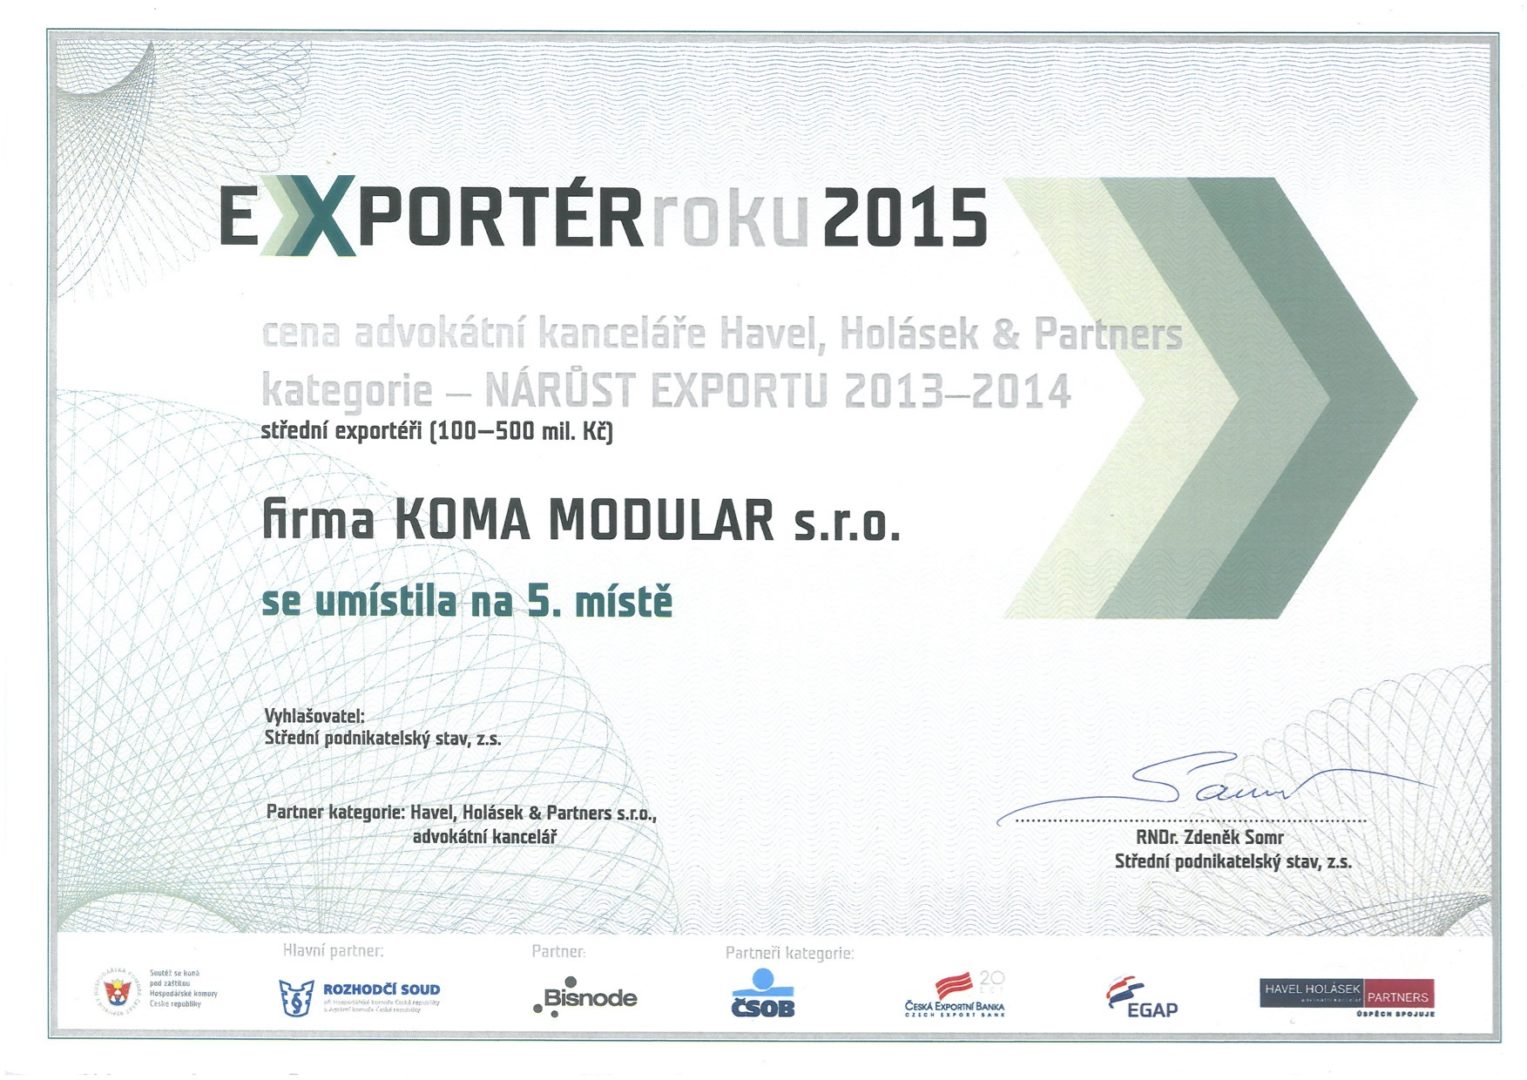 Exportér roku 2015 - umístění v kategorii středních exportérů 100-500 mil. Kč